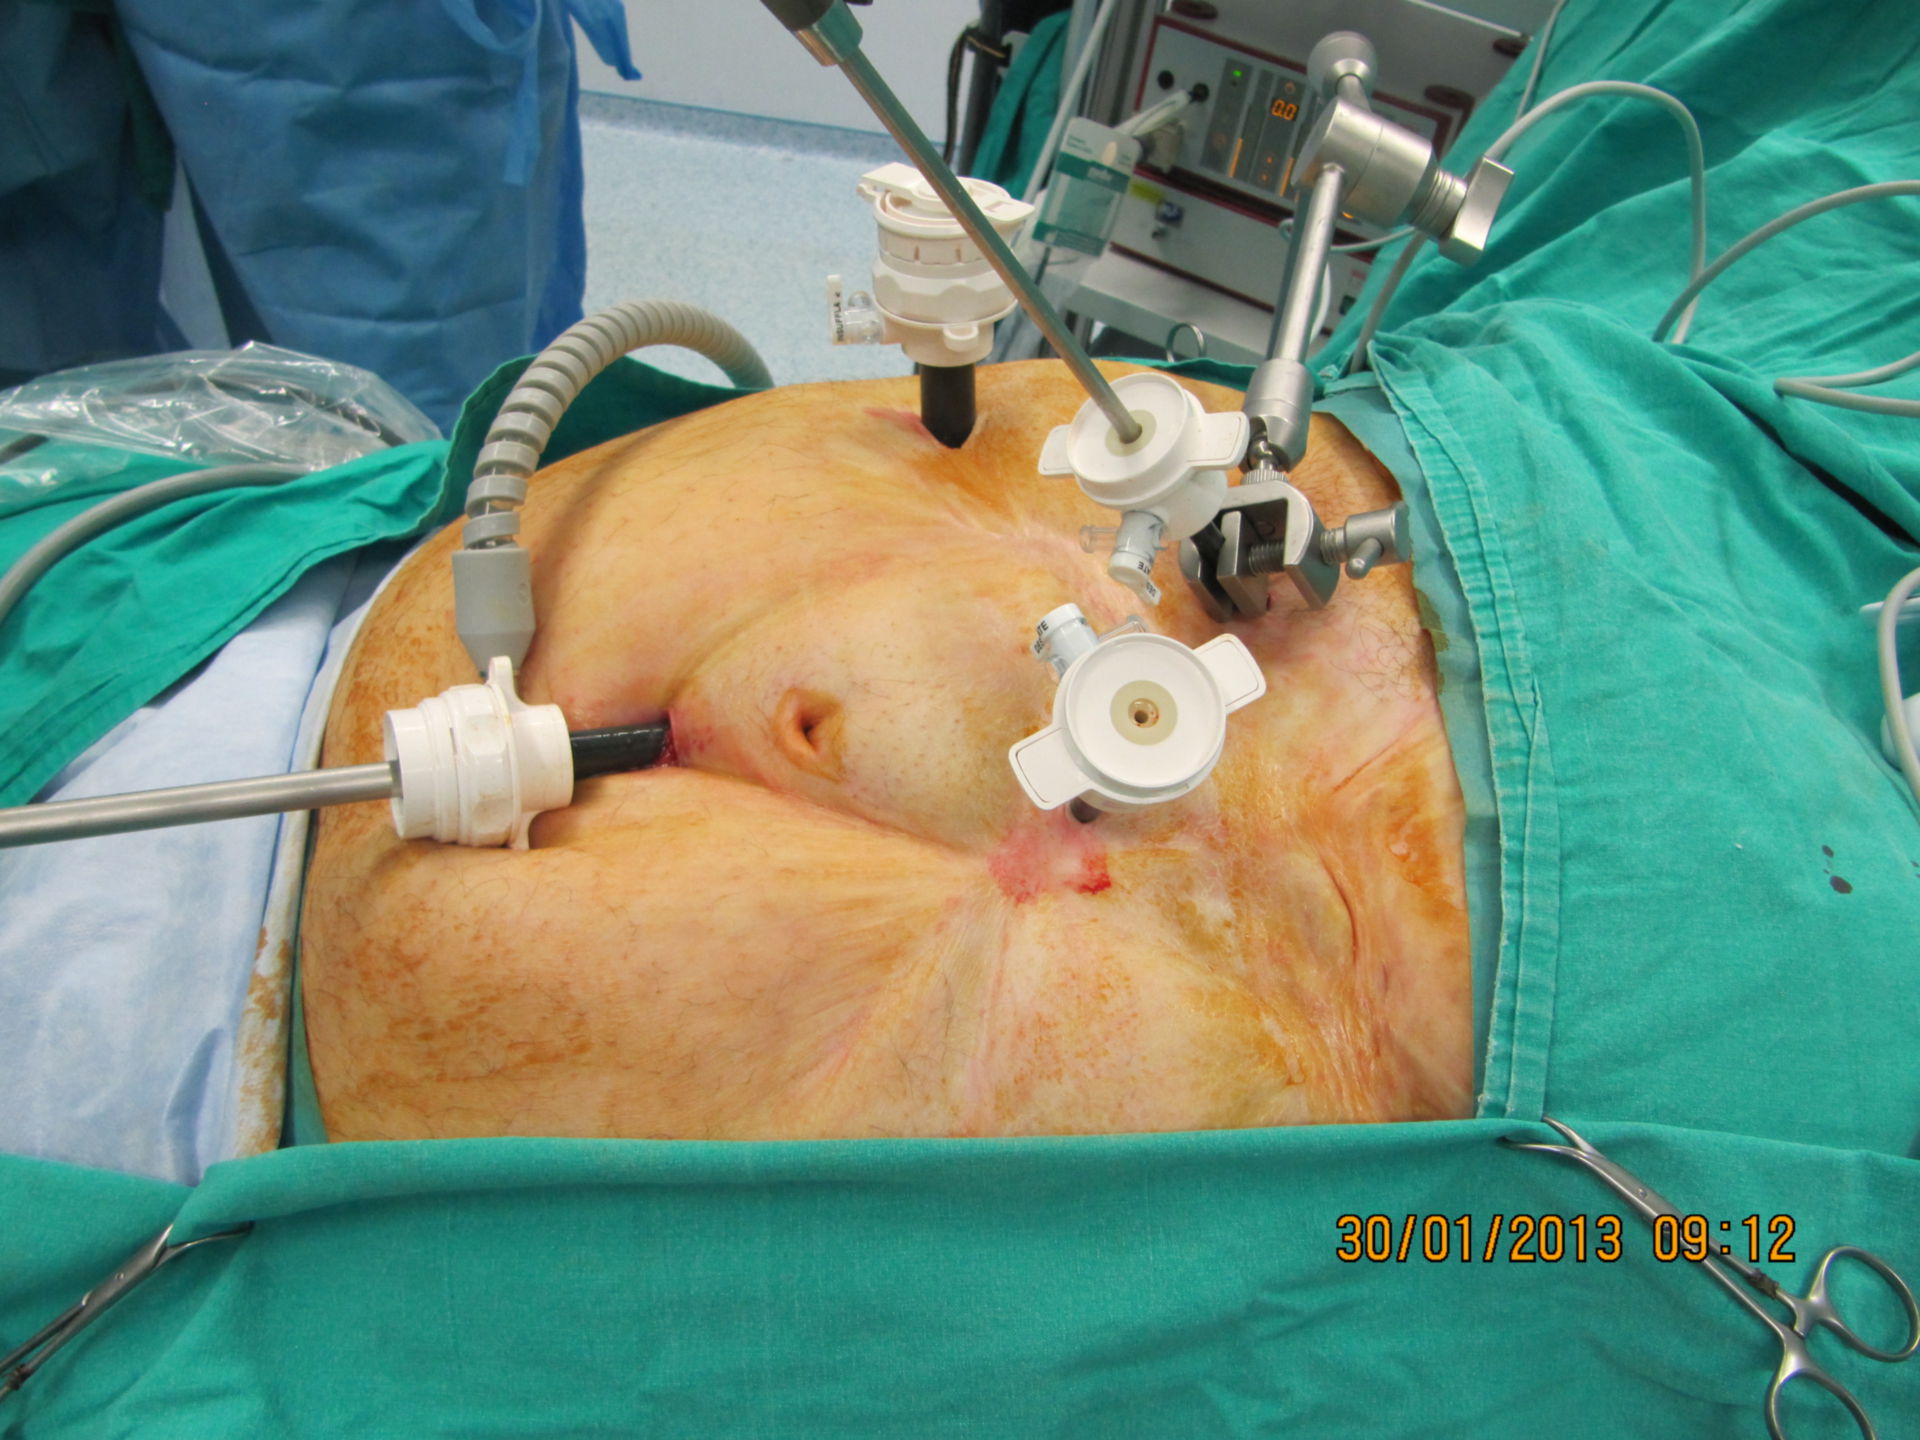 Inserimenti Trocar per la chirurgia bariatrica laparoscopica